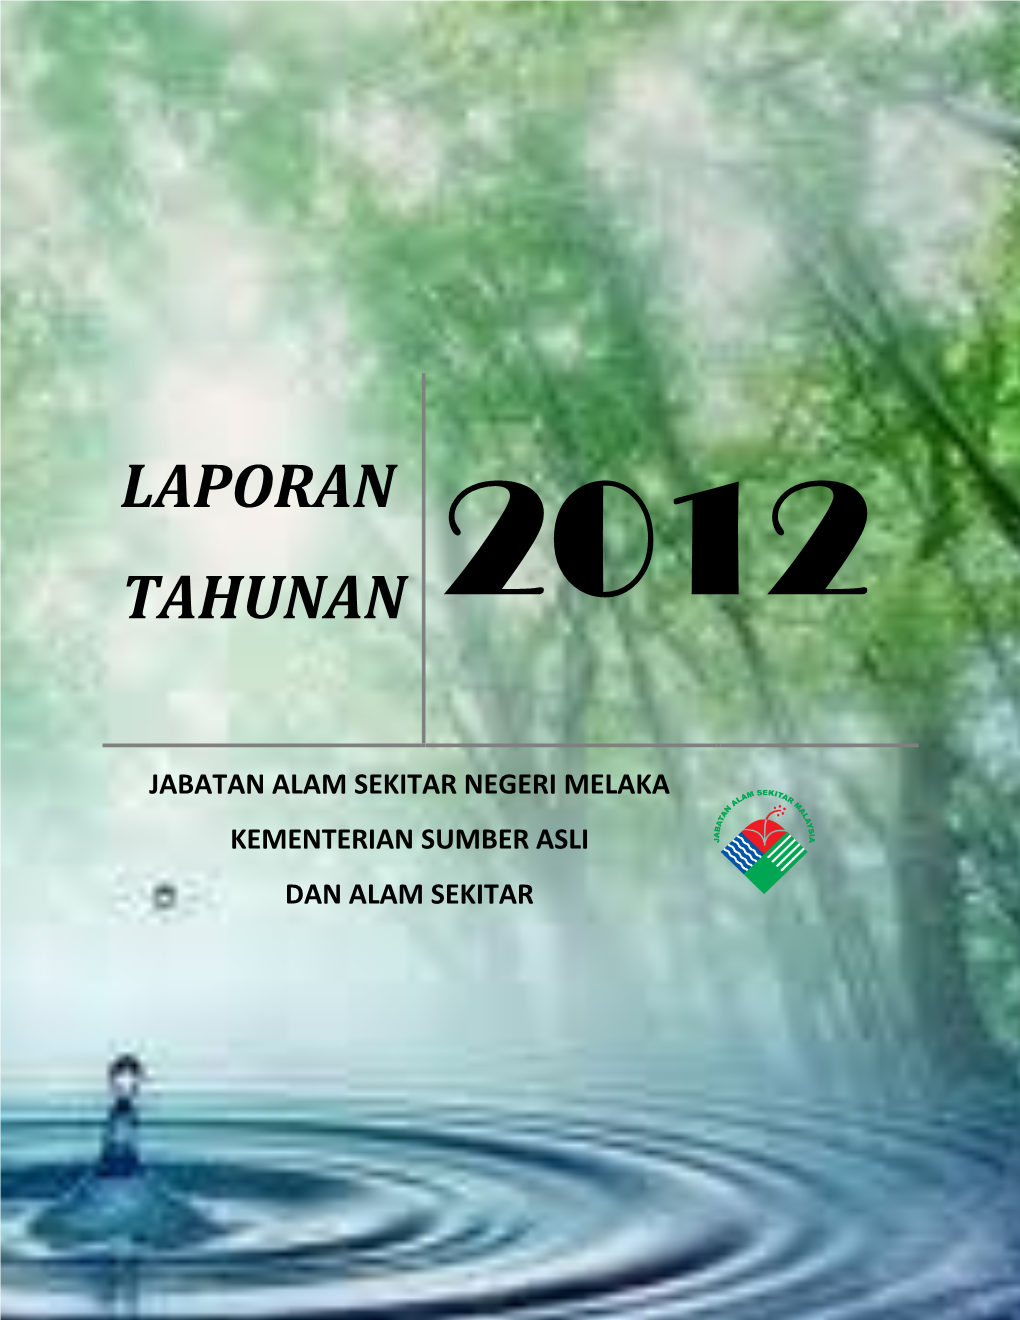 Laporan Tahunan Jabatan Alam Sekitar Negeri Melaka 2012